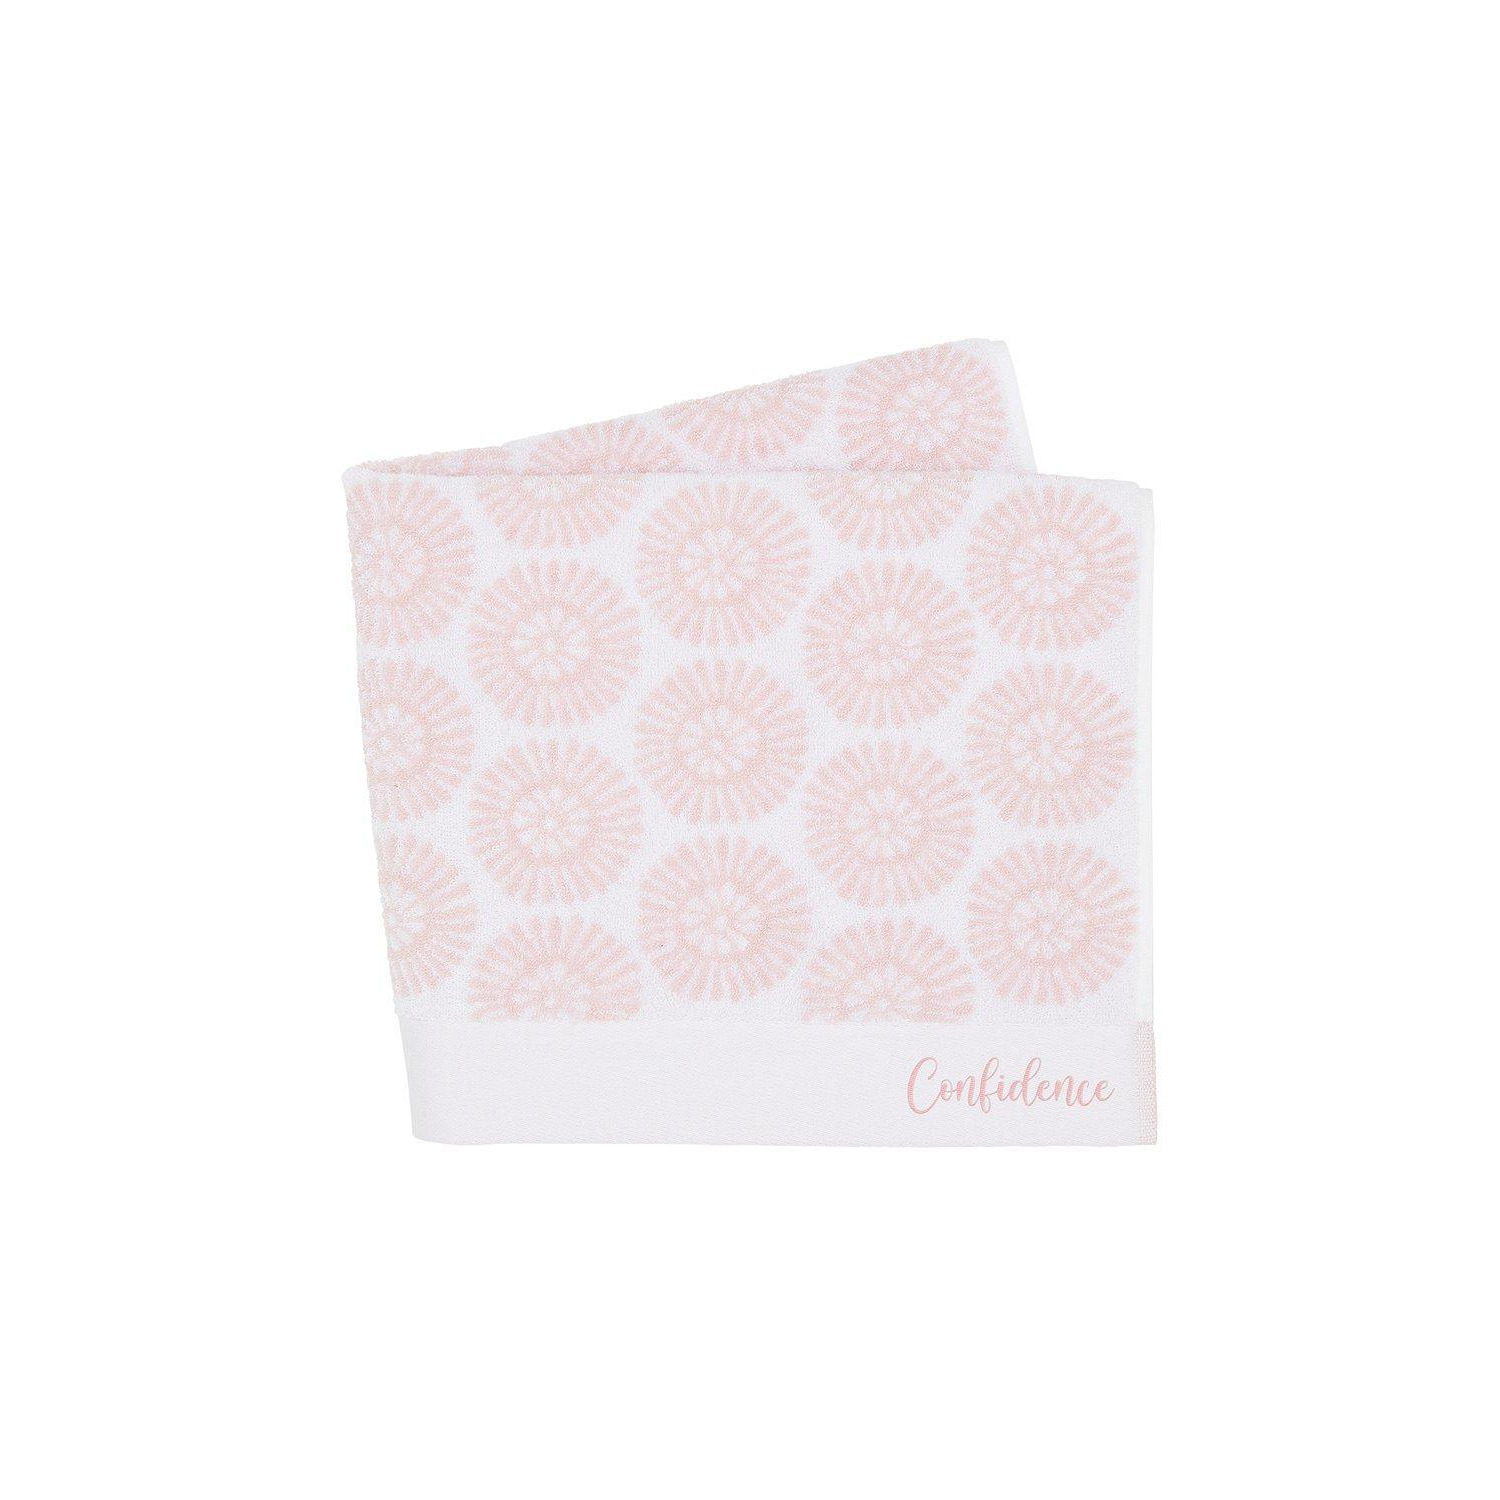 'Confidence Floral Petal' Cotton Towels - image 1